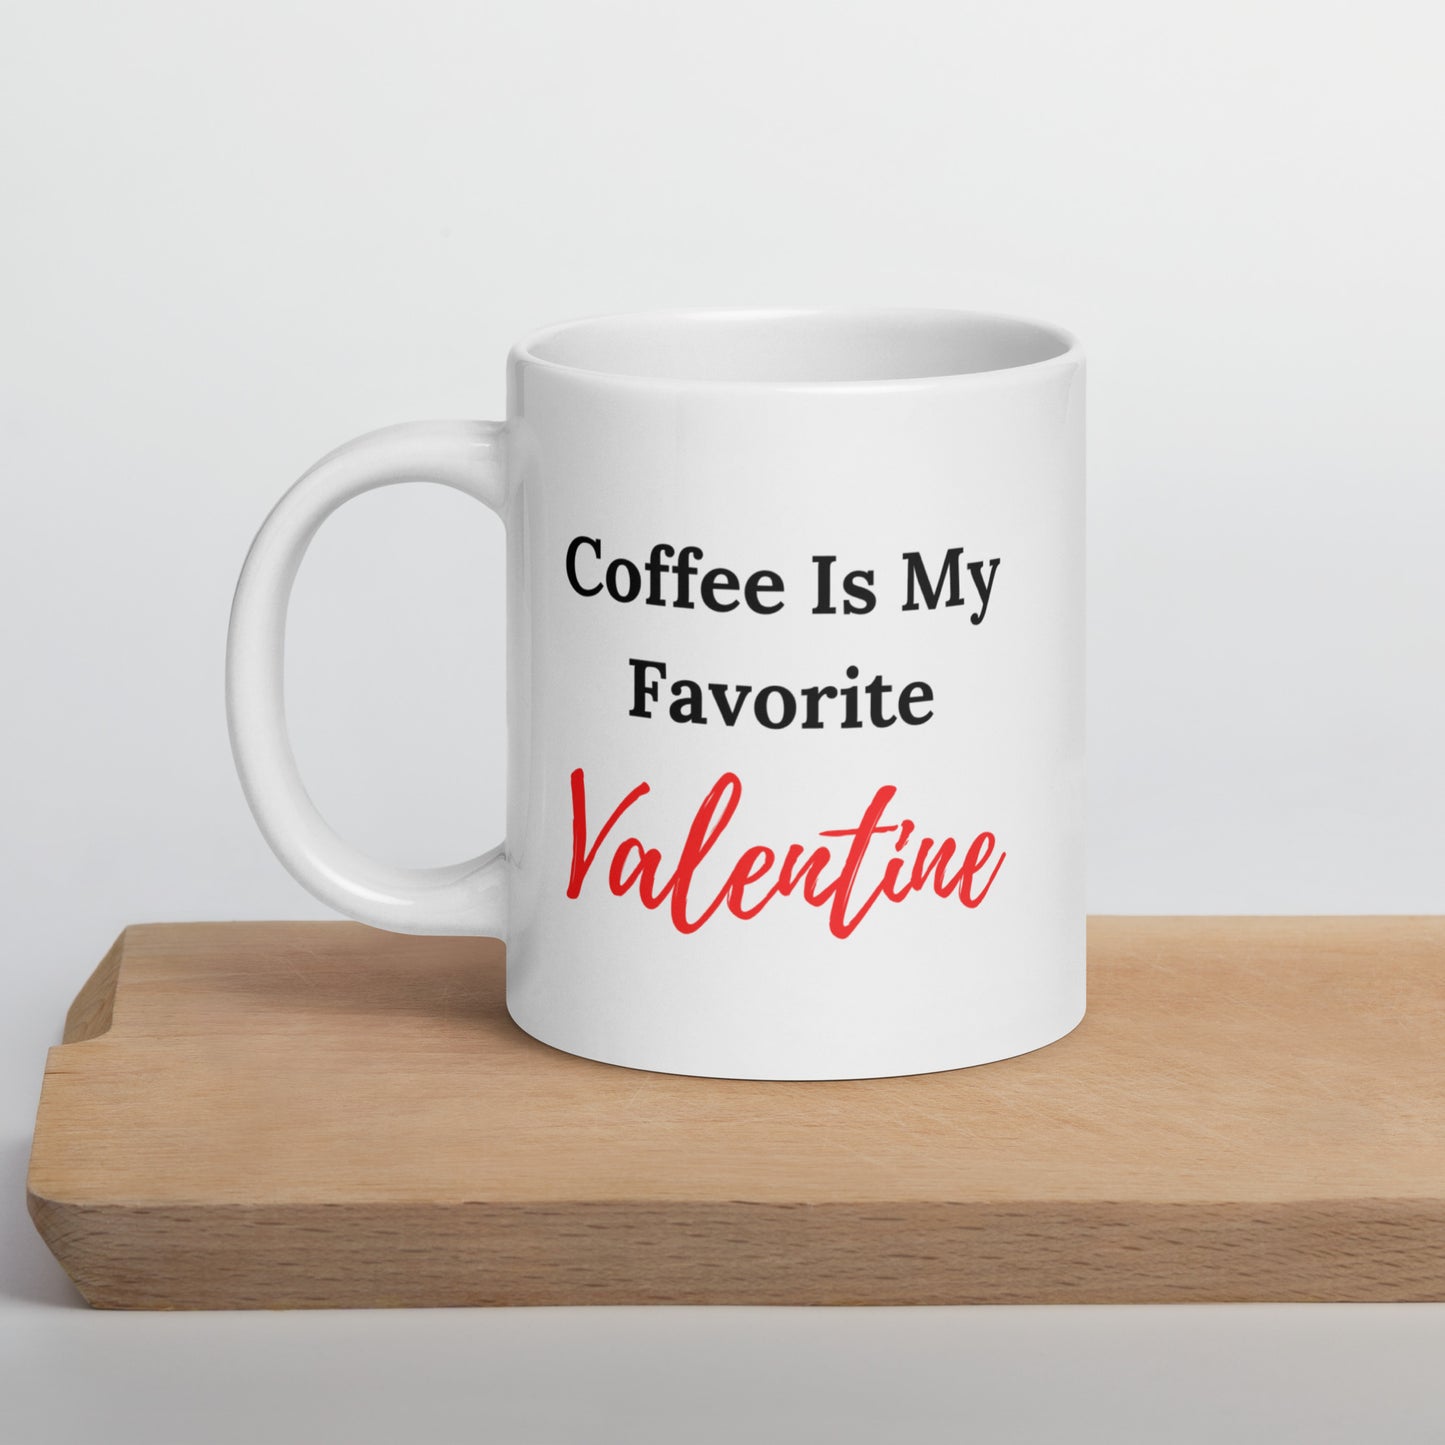 Coffee Is My Favorite Valentine, Anti Valentine Gift, Valentine Coffee Mug, Funny Valentine, Funny Valentine Gift, Anti Valentine's Day